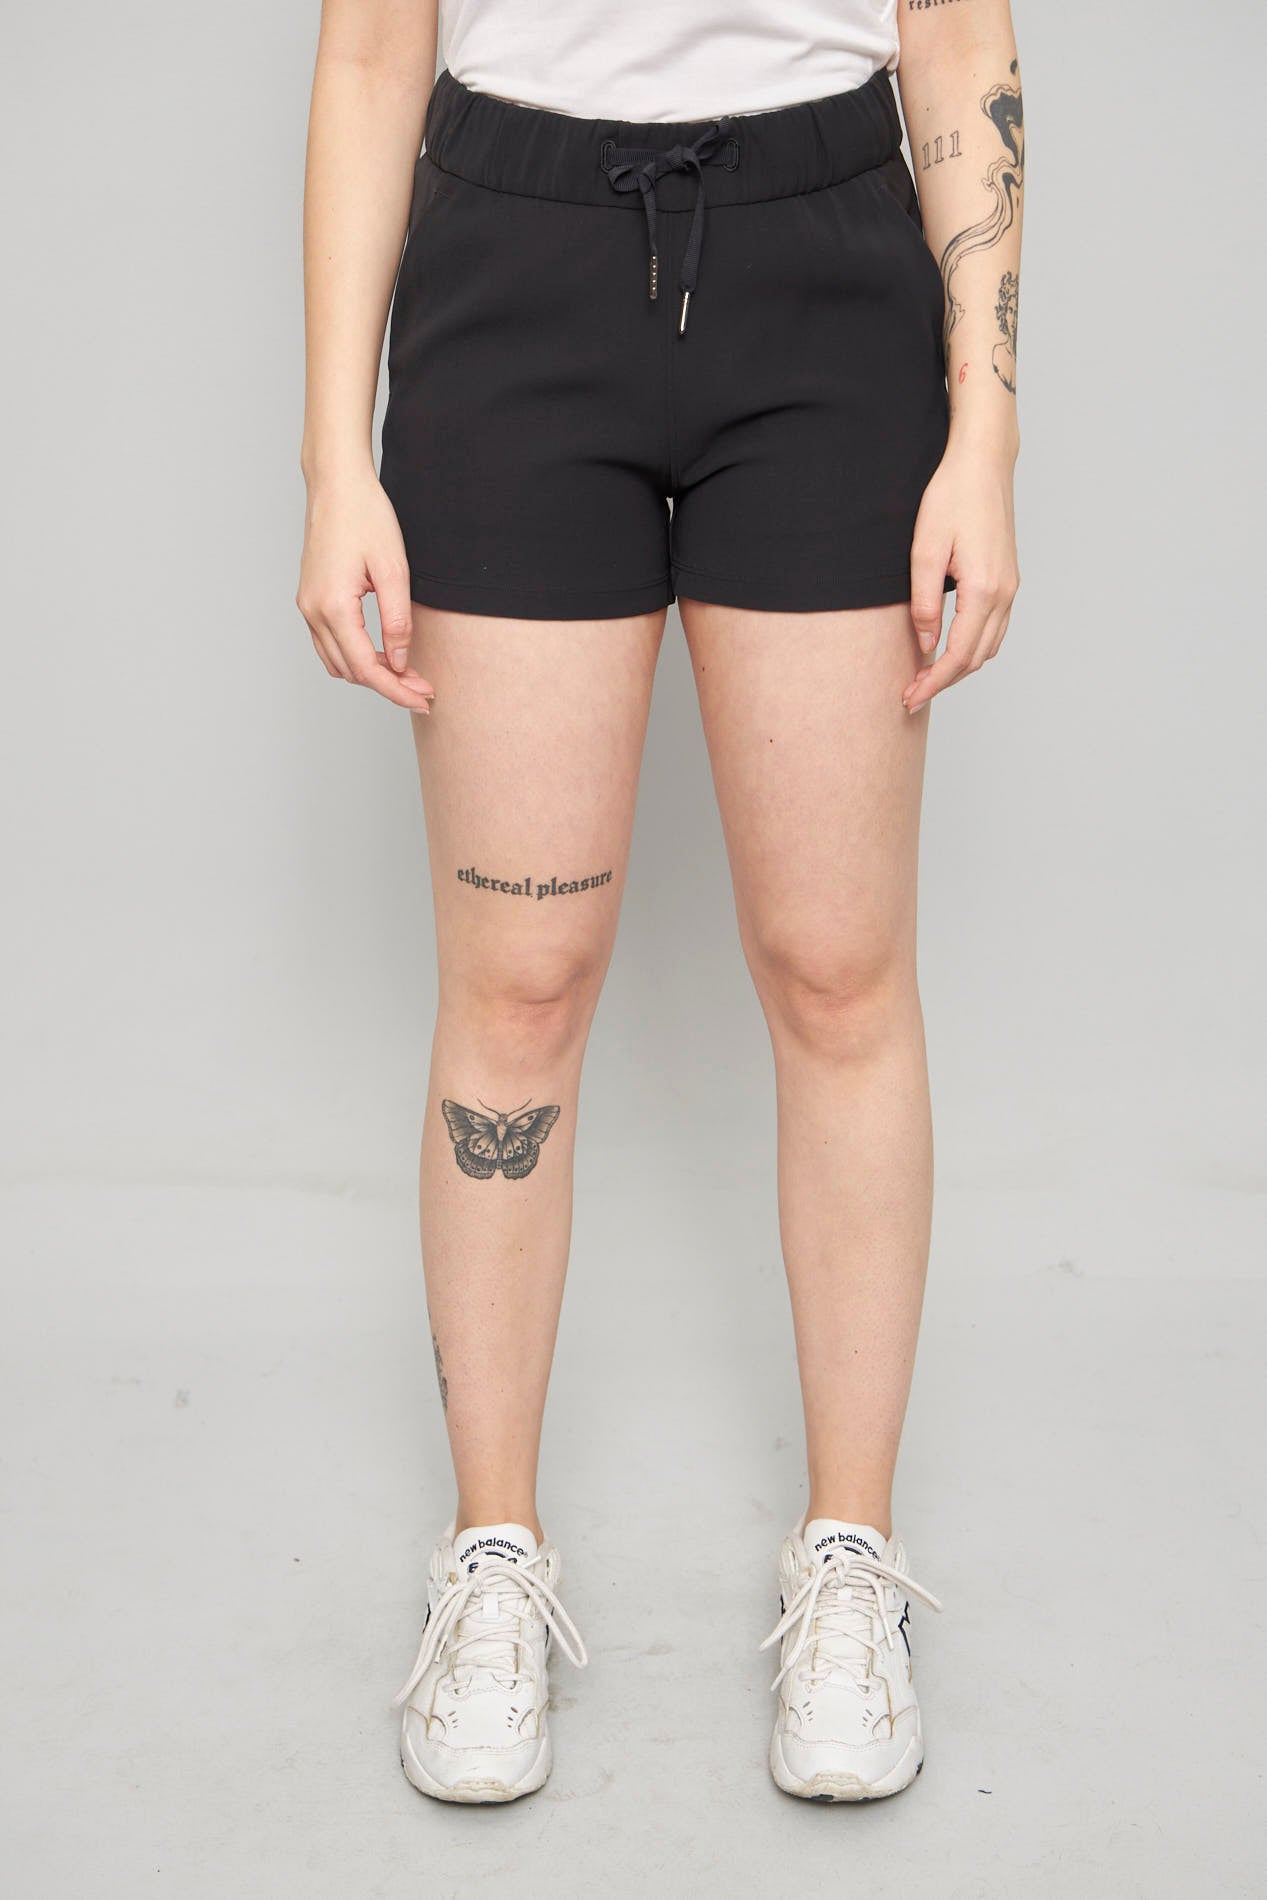 Shorts casual  negro lululemon talla Xs 310